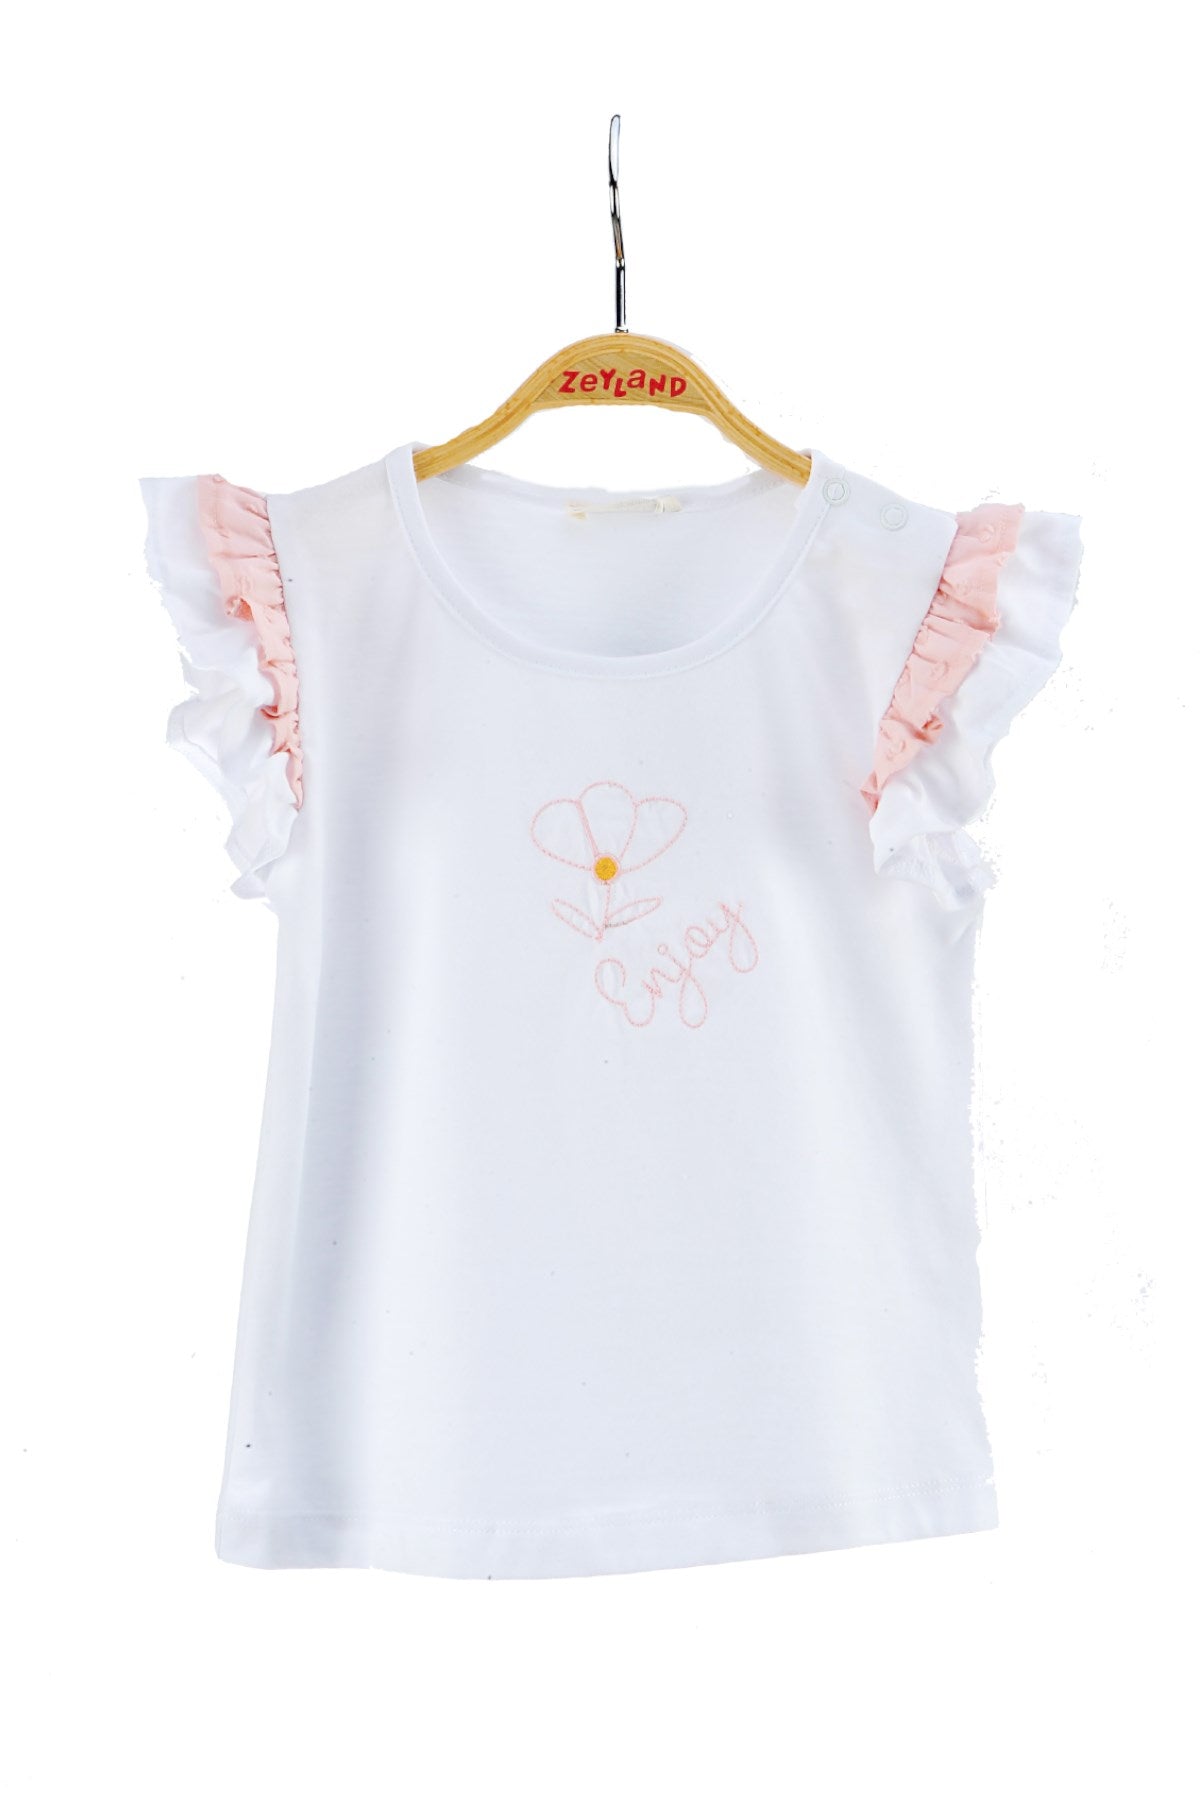 Kız Bebek Beyaz Kolları Fırfırlı T-Shirt (6ay-4yaş)-0